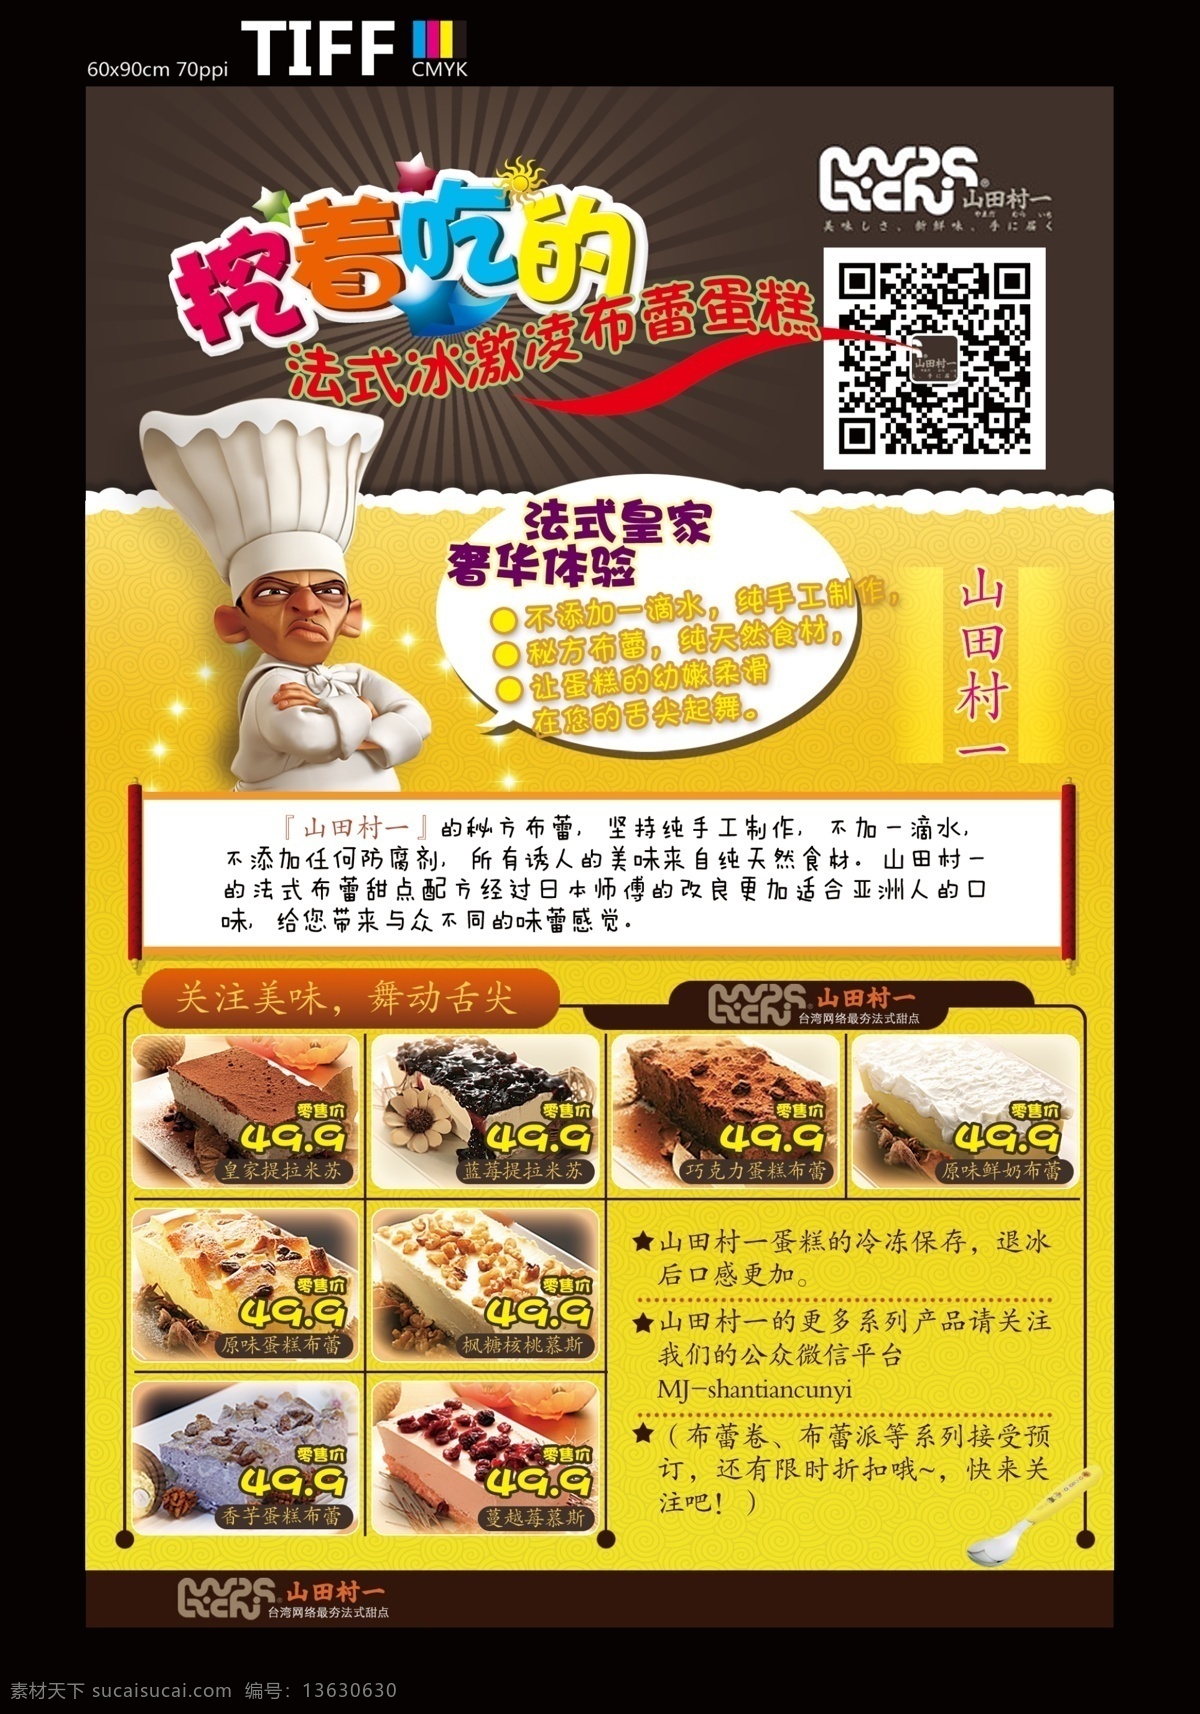 蛋糕 促销 海报 厨师 传单 糕点 黄色 卡通 帽子 美食 美味 山田村一 布蕾 团购 日式 原创设计 原创海报